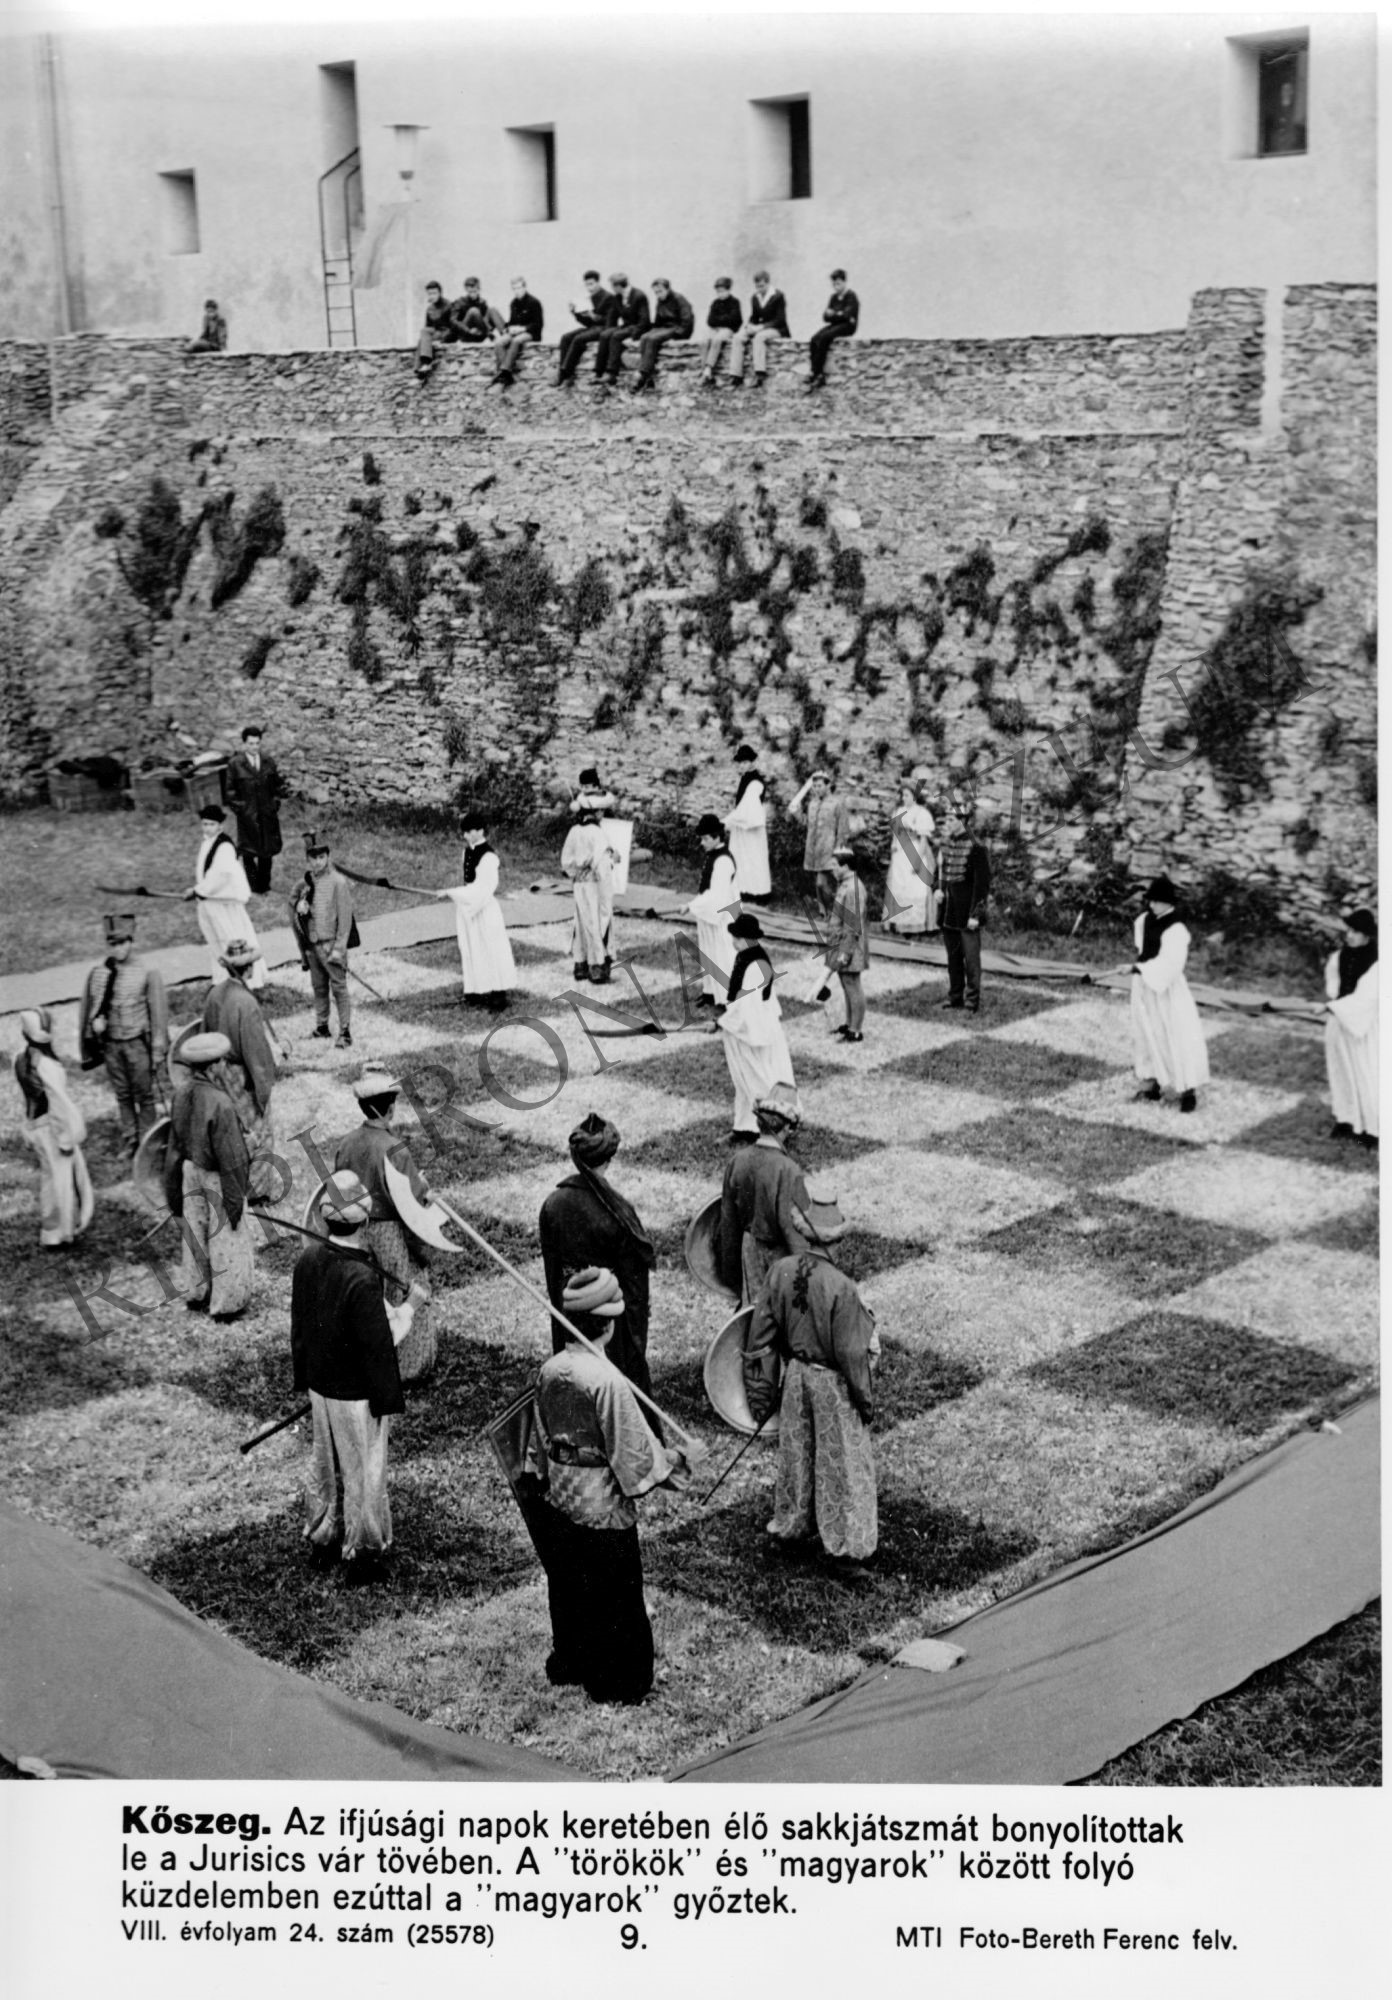 Élő sakkjátszma Kőszegen az ifjúsági napok keretében (Rippl-Rónai Múzeum CC BY-NC-SA)